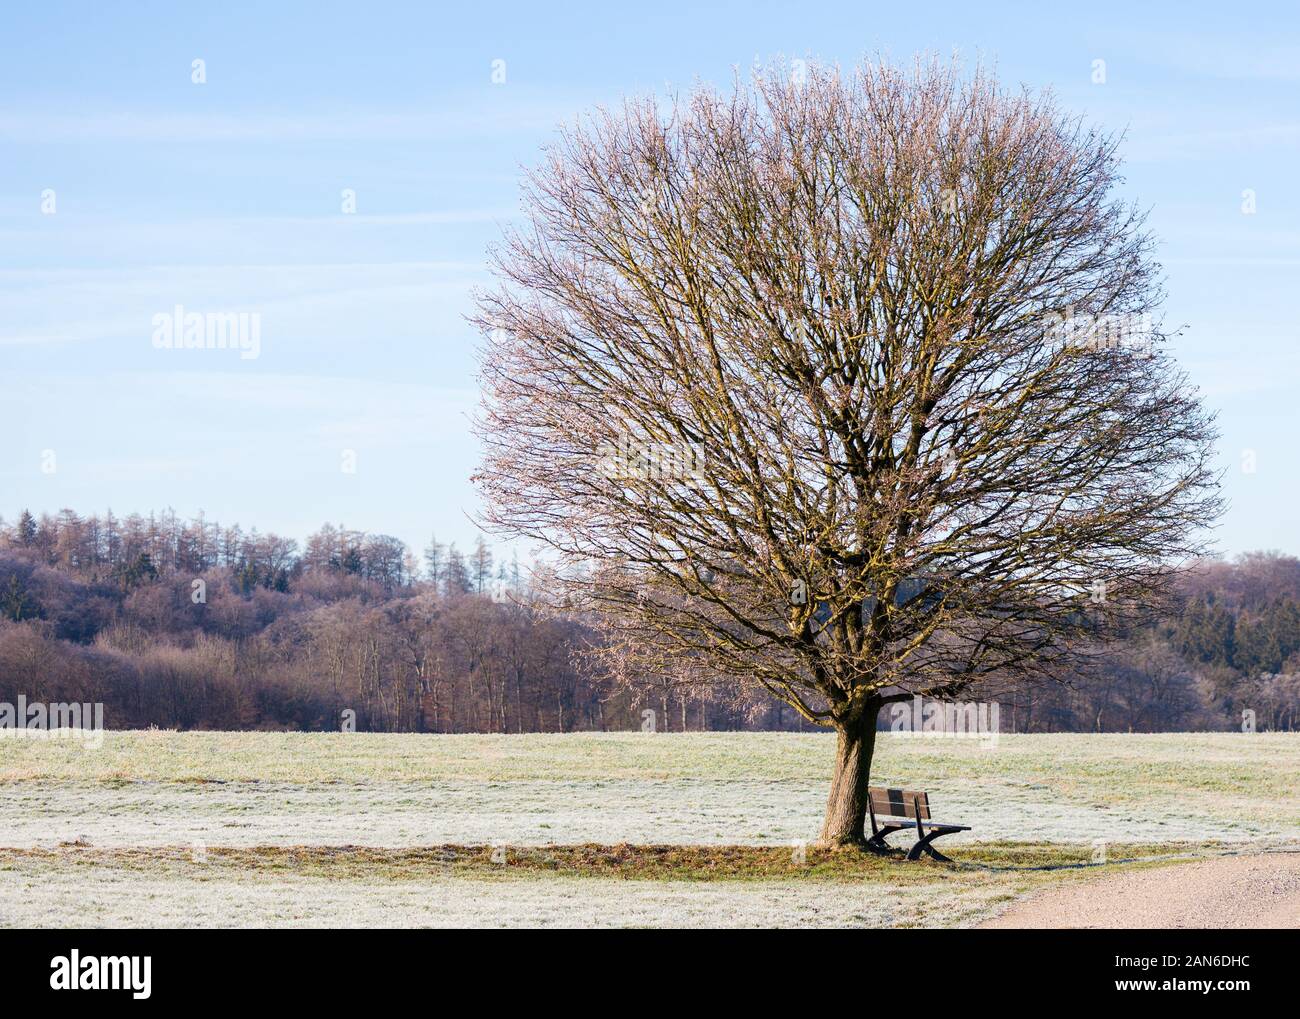 Blick auf einen einsamen Baum - Winterlandschaft in Bayern. Äste, die in Richtung Himmel reichen. Konzept für Einsamkeit, Melancholie, Stille, Entspannung. Stockfoto